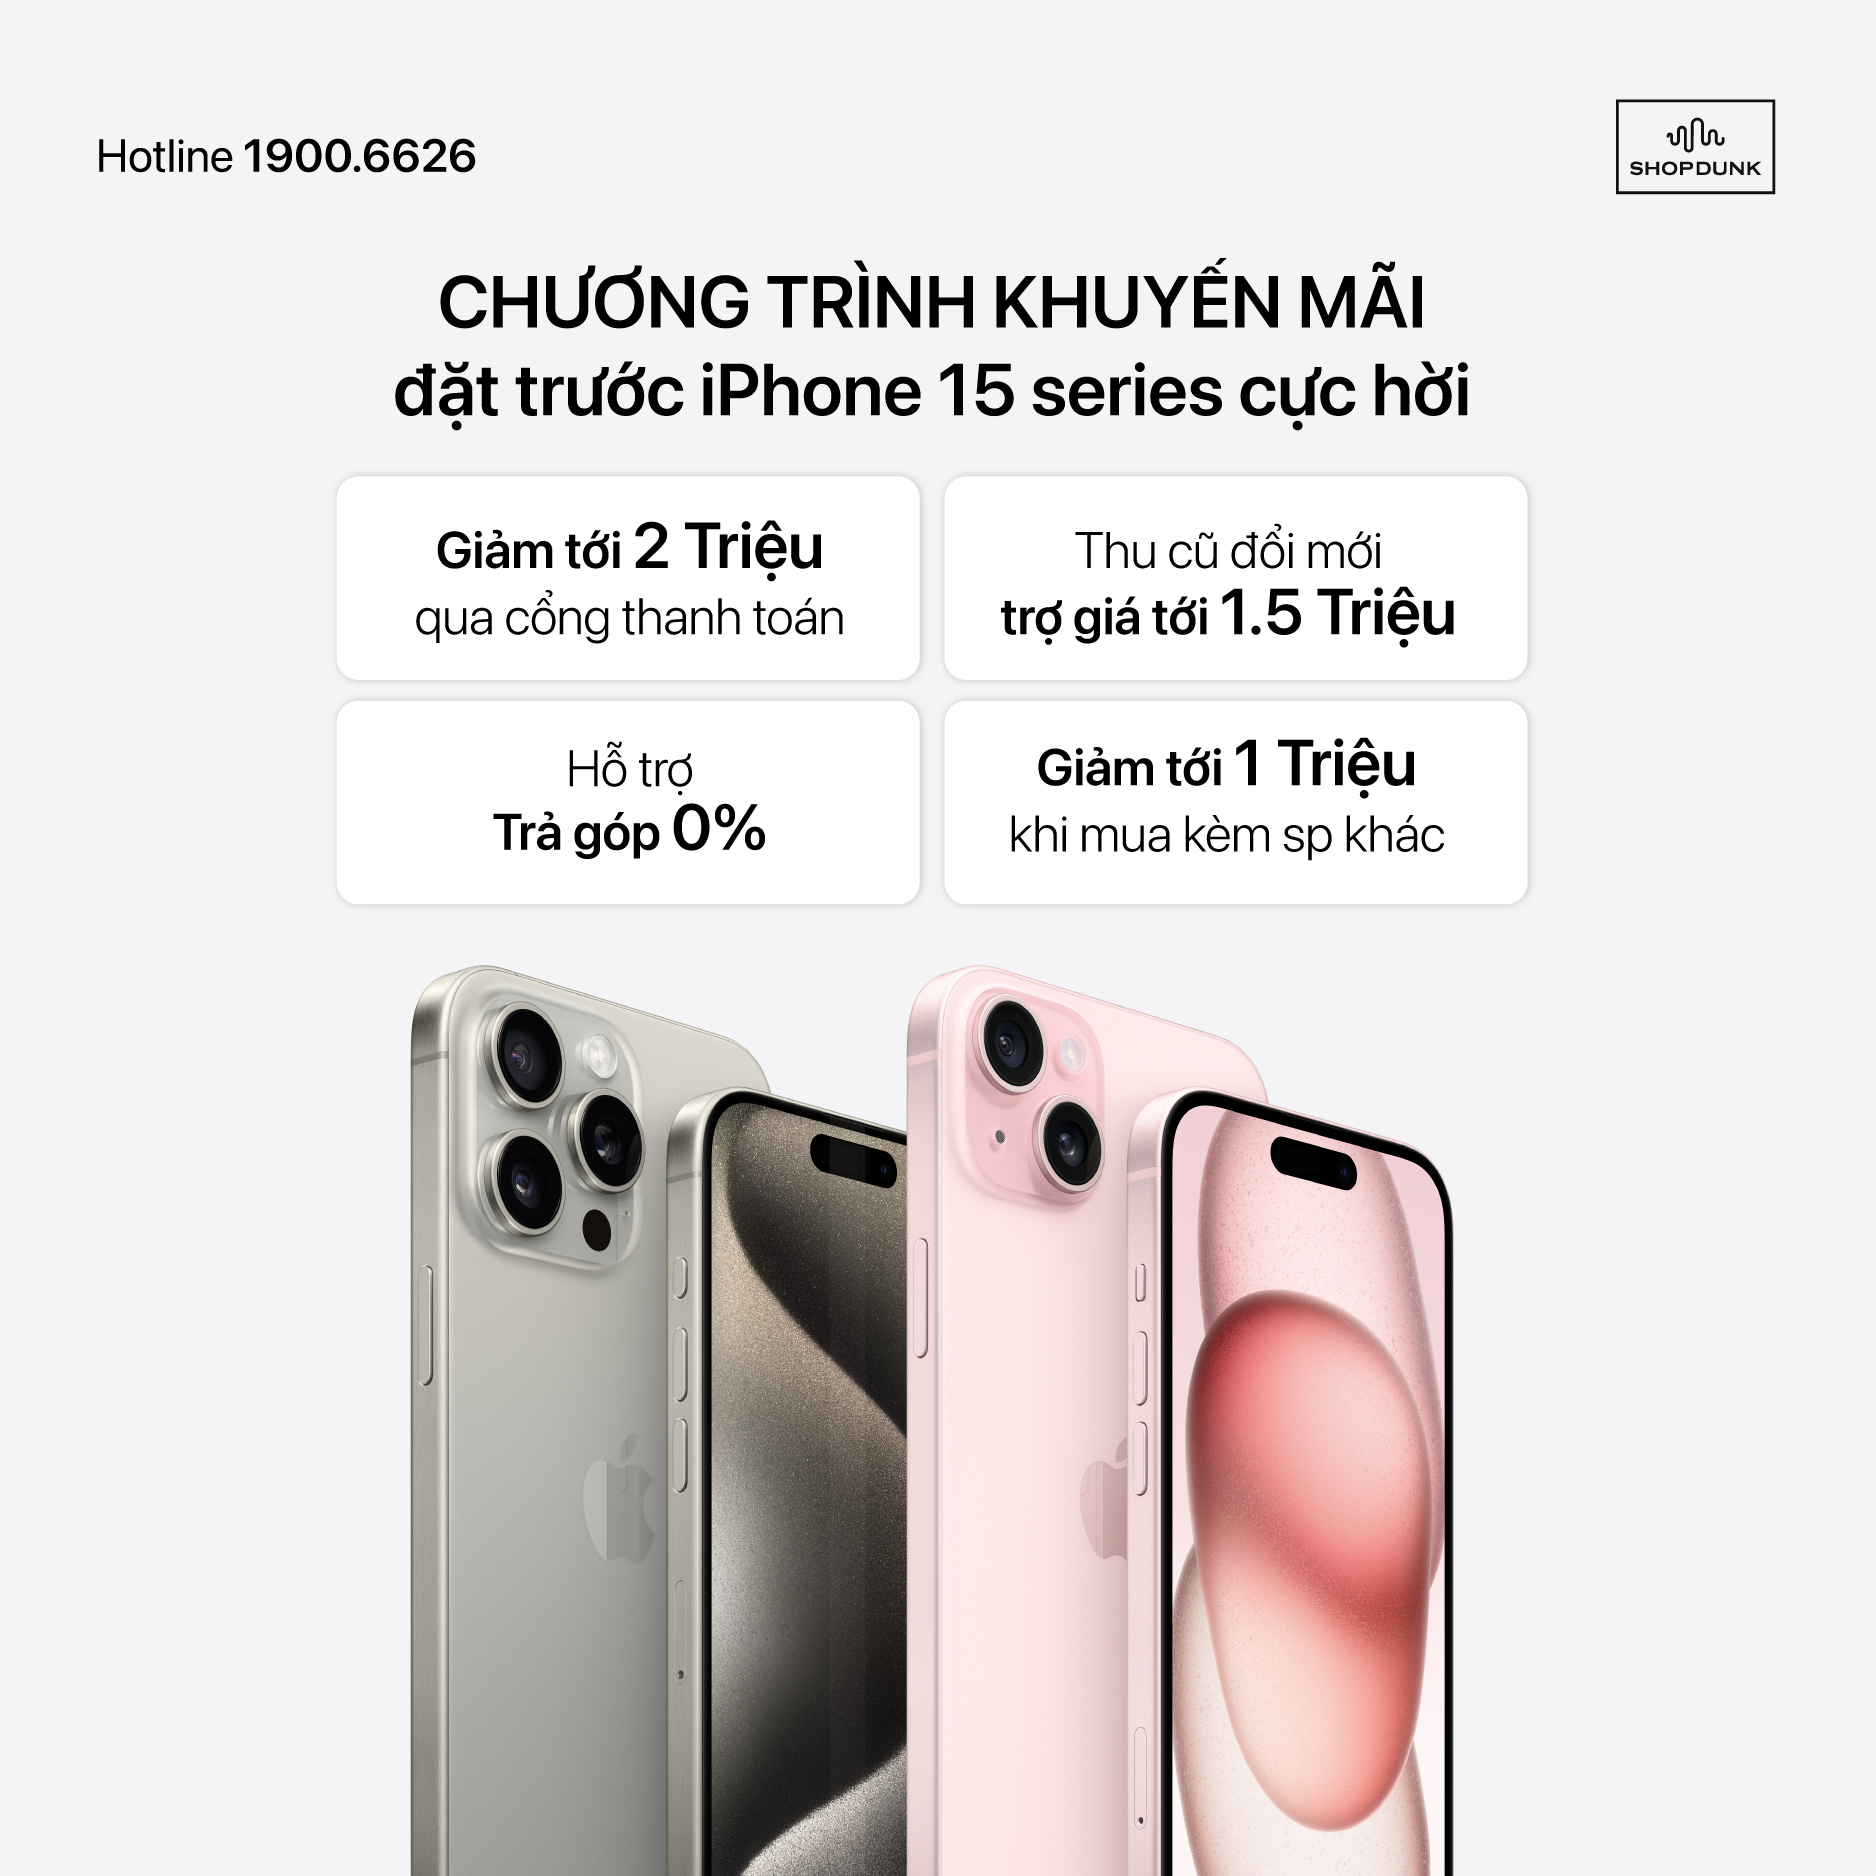 iPhone 9 Plus Chính Hãng Xách Tay, Giá Rẻ, Trả Góp 0%